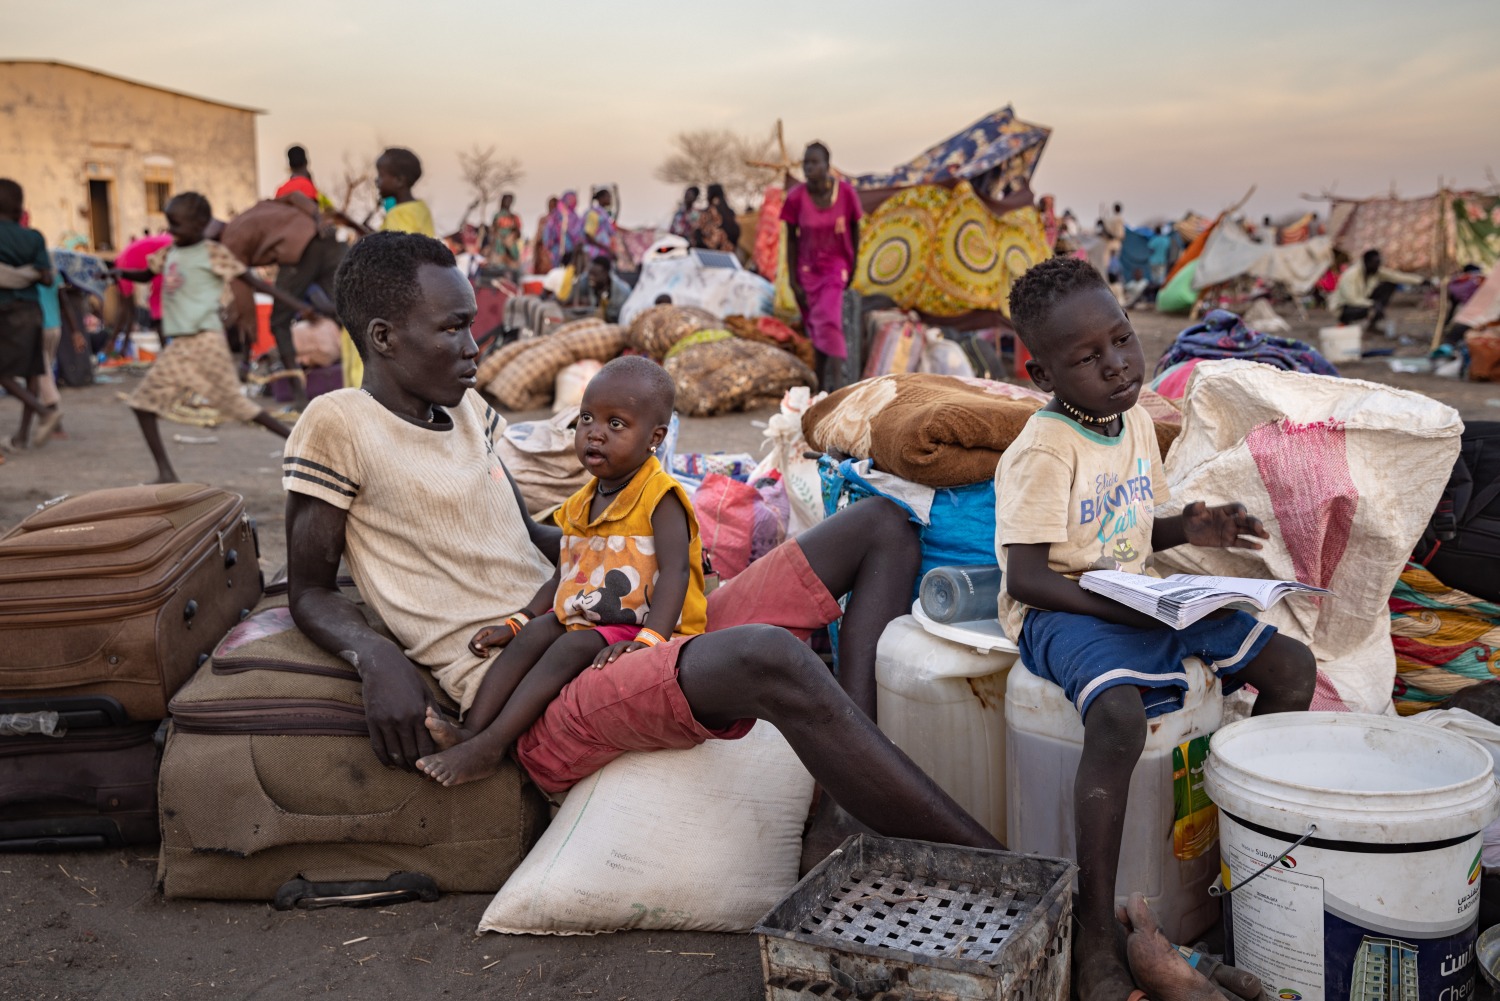 refugiados sudaneses